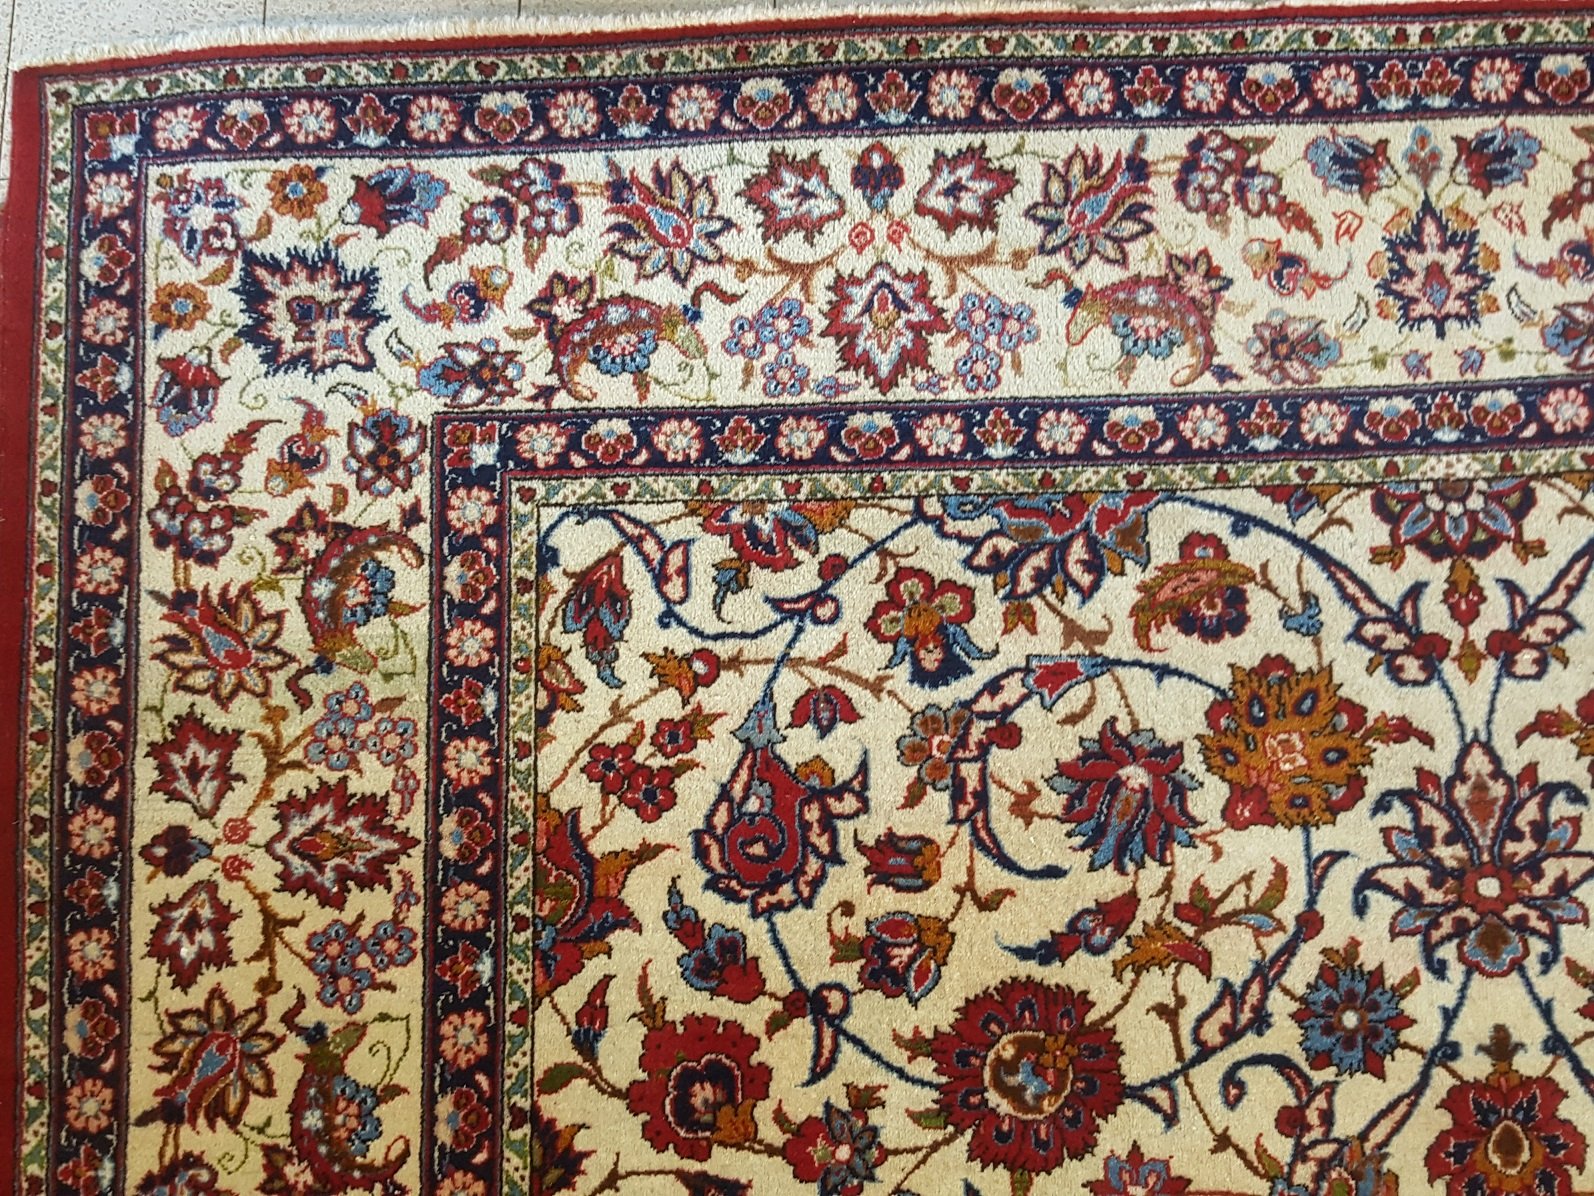 שטיח פרסי איספהאן לאחר תיקון הפרדת צבעים רסטורציה לשטיח.